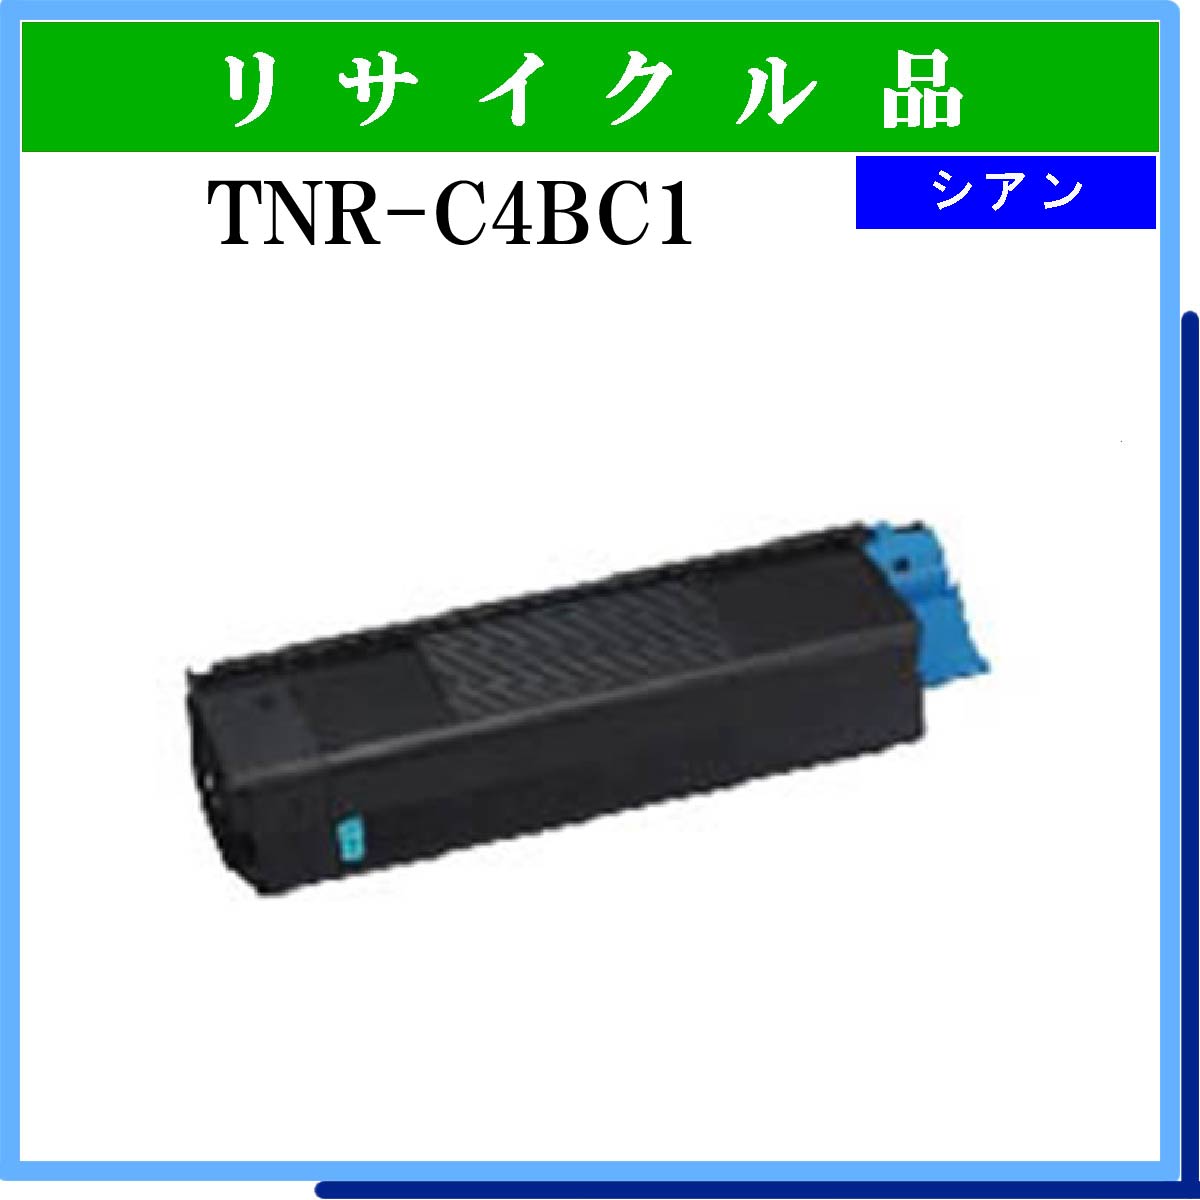 TNR-C4BC1 - ウインドウを閉じる